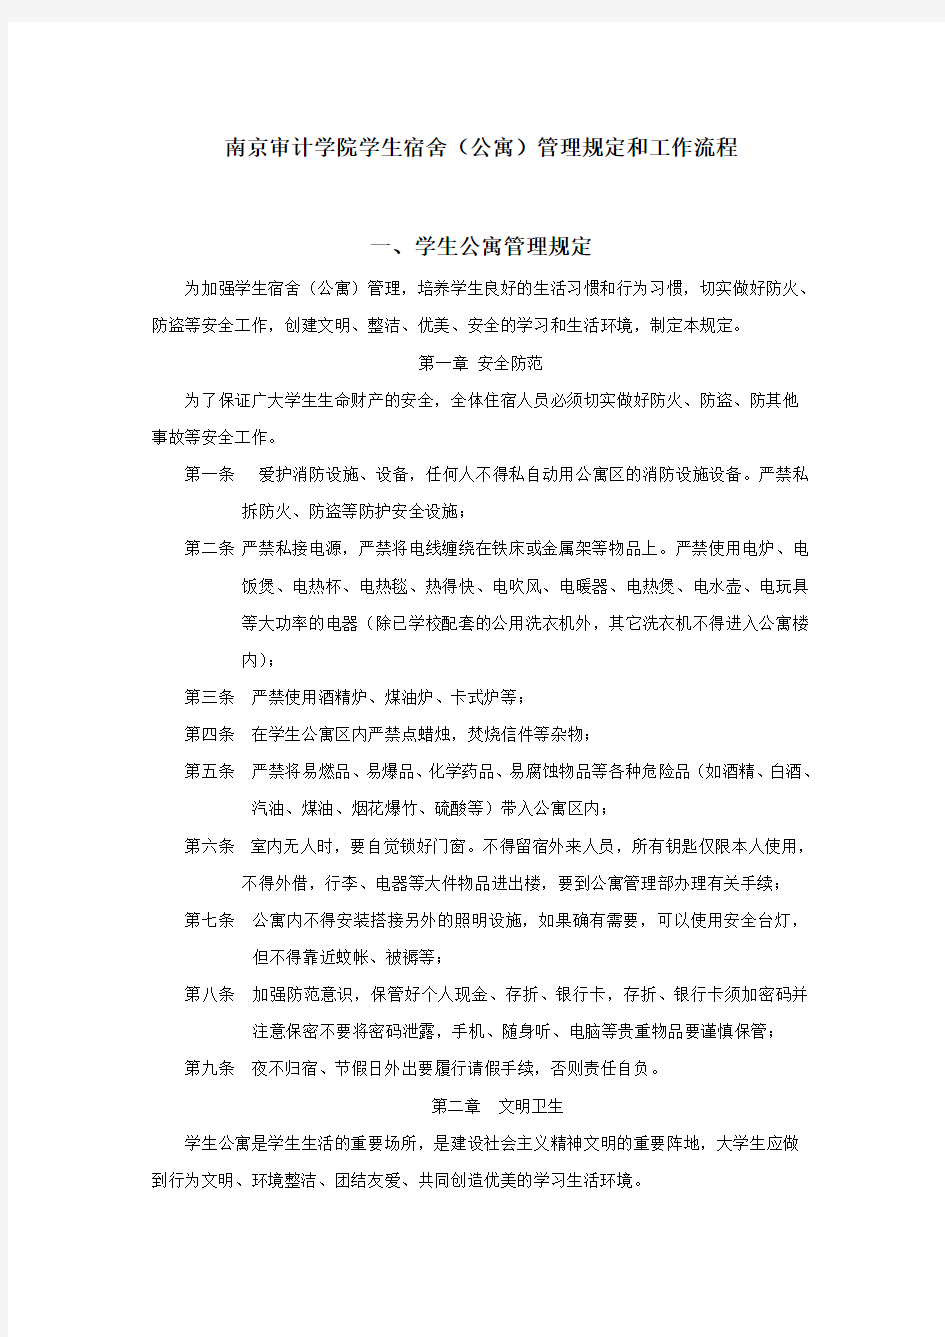 南京审计学院学生宿舍公寓管理规定和工作流程